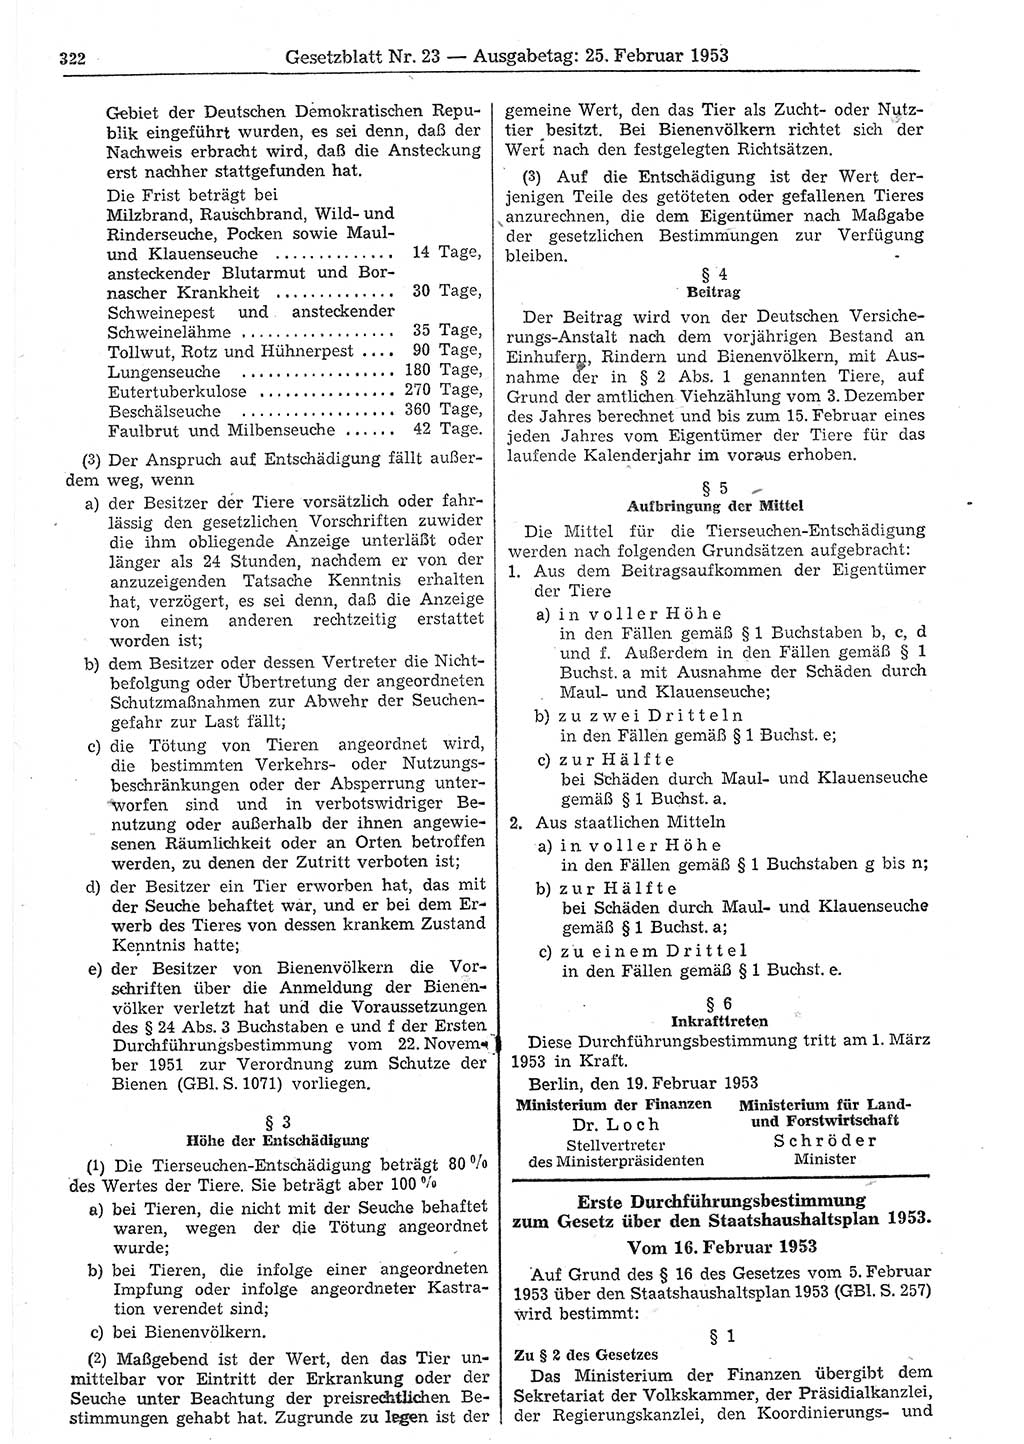 Gesetzblatt (GBl.) der Deutschen Demokratischen Republik (DDR) 1953, Seite 322 (GBl. DDR 1953, S. 322)